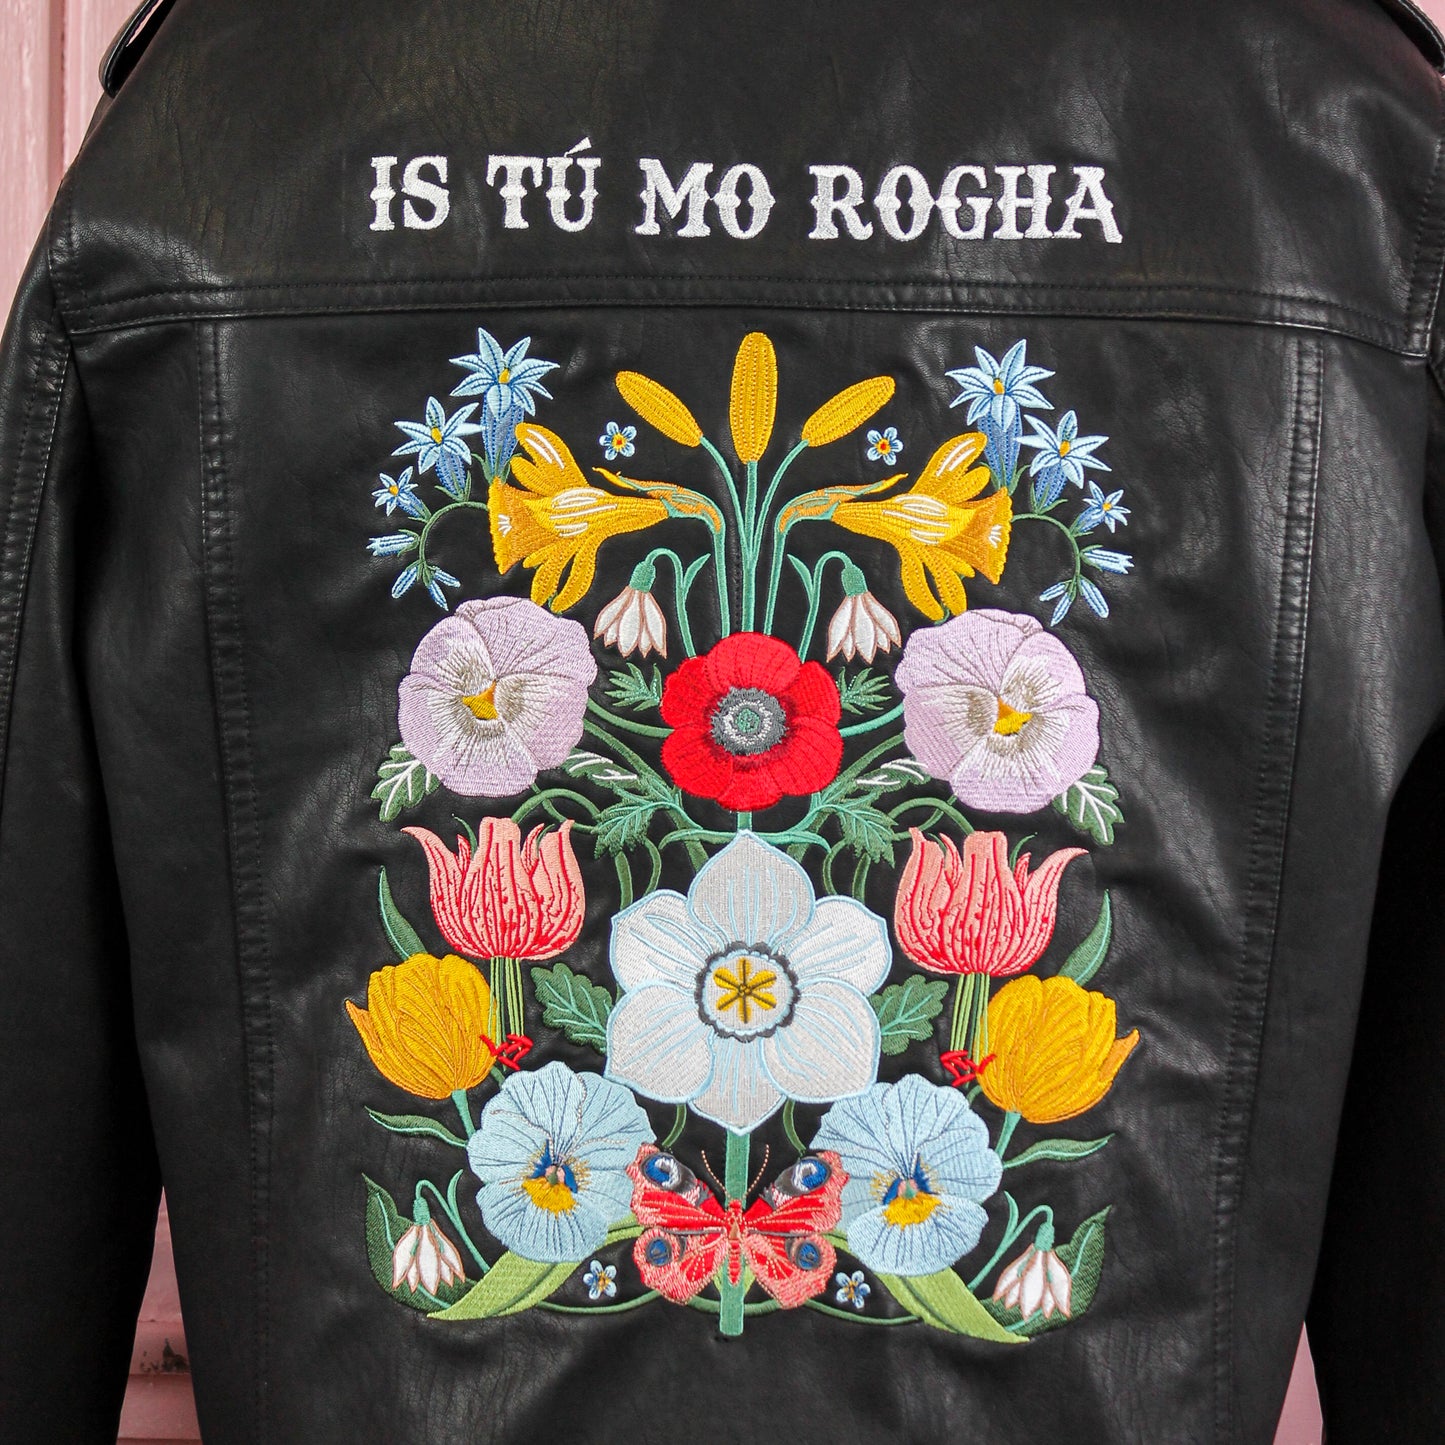 Floral design leather biker jacket, ideal for bridal attire